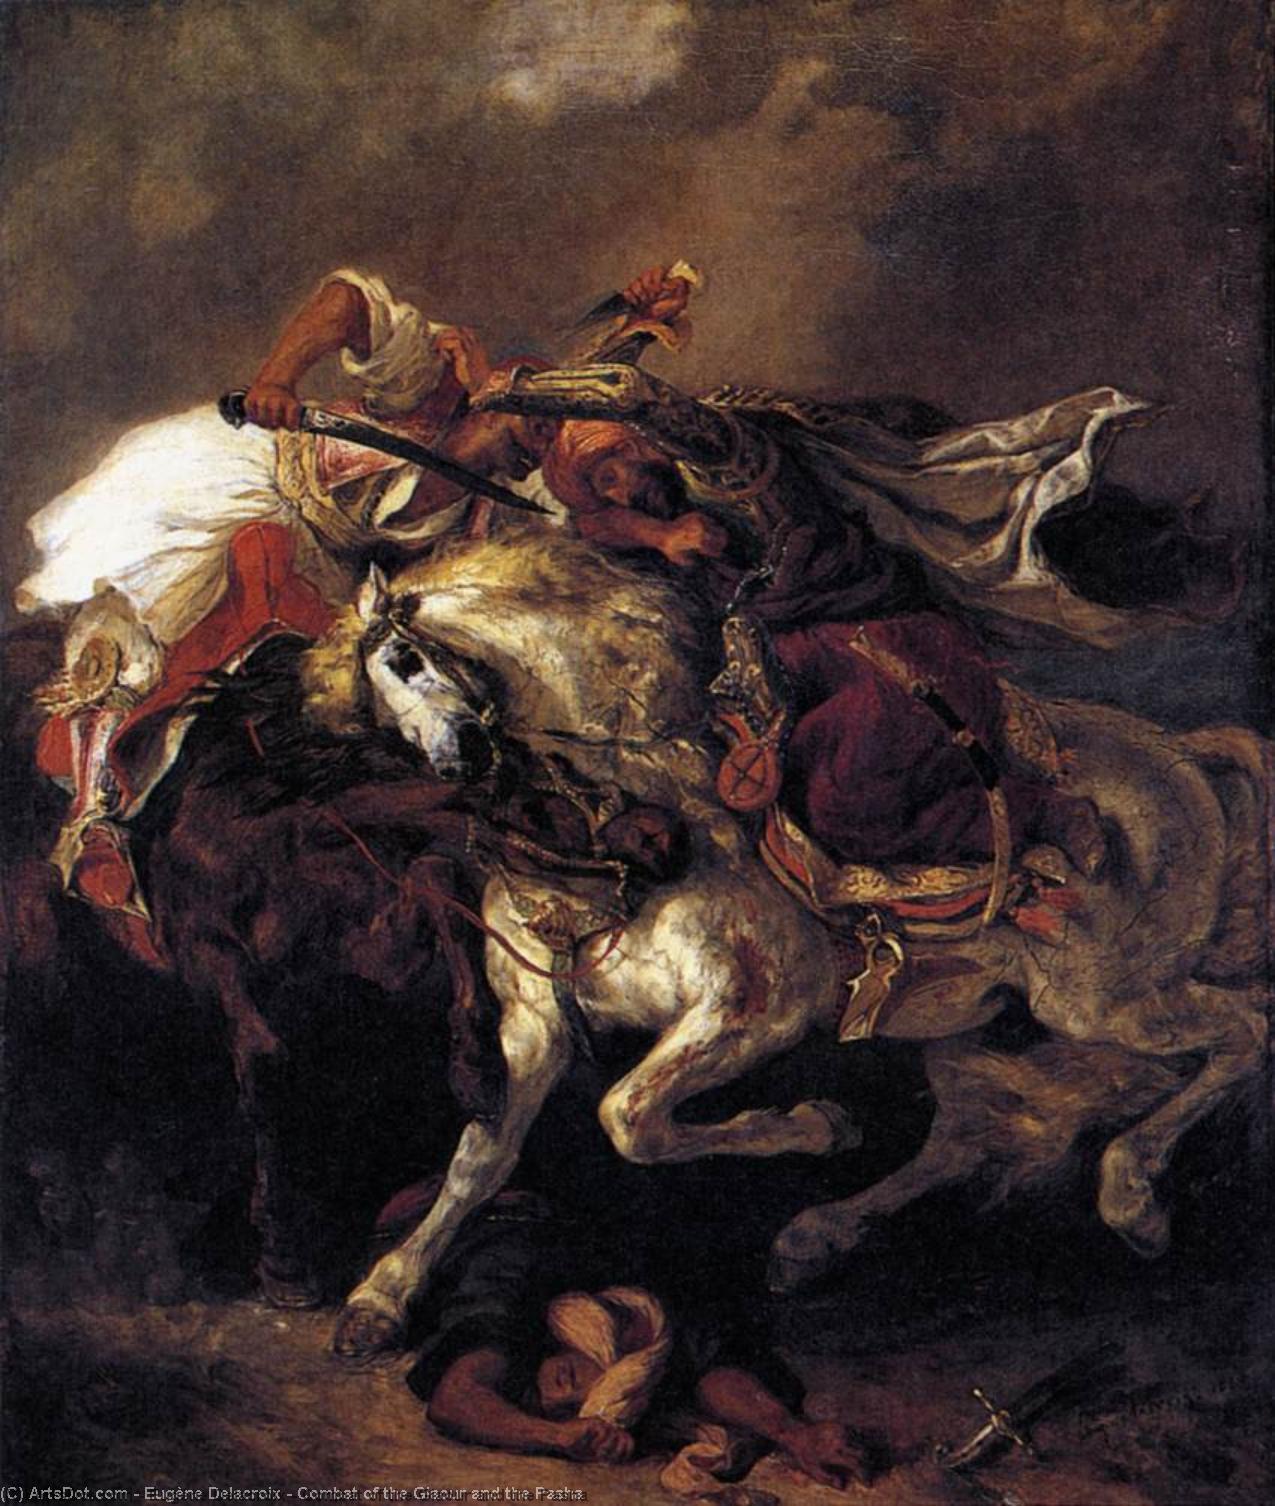 Acheter Reproductions D'art De Musée Combat du Giaour et du Pasha, 1835 de Eugène Delacroix (1798-1863, France) | ArtsDot.com